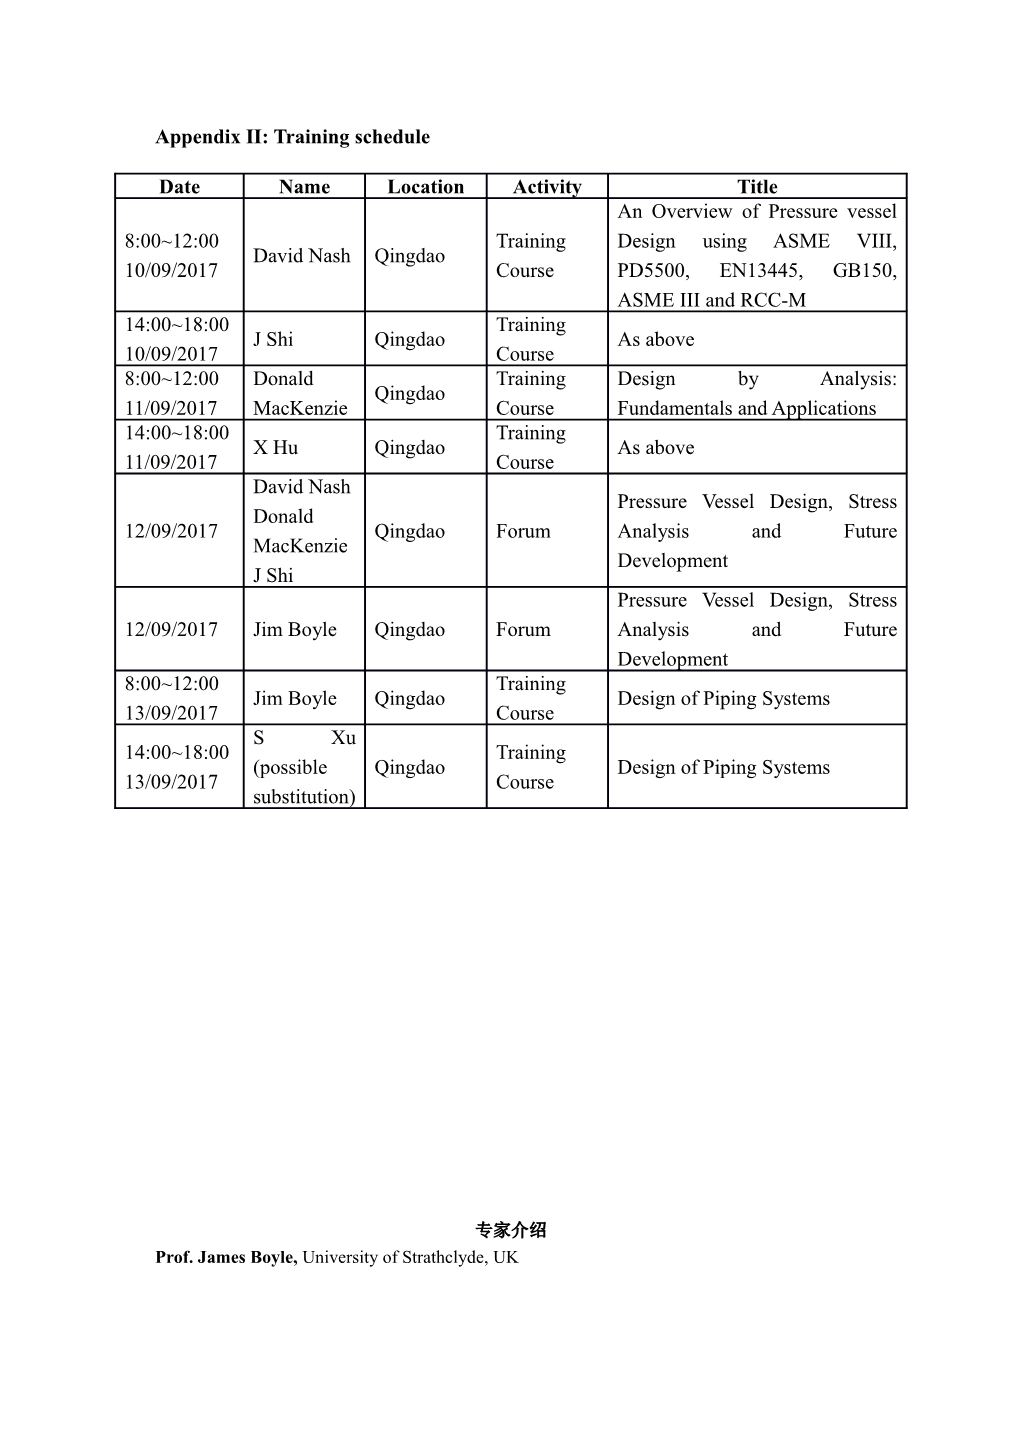 Appendix II: Training Schedule